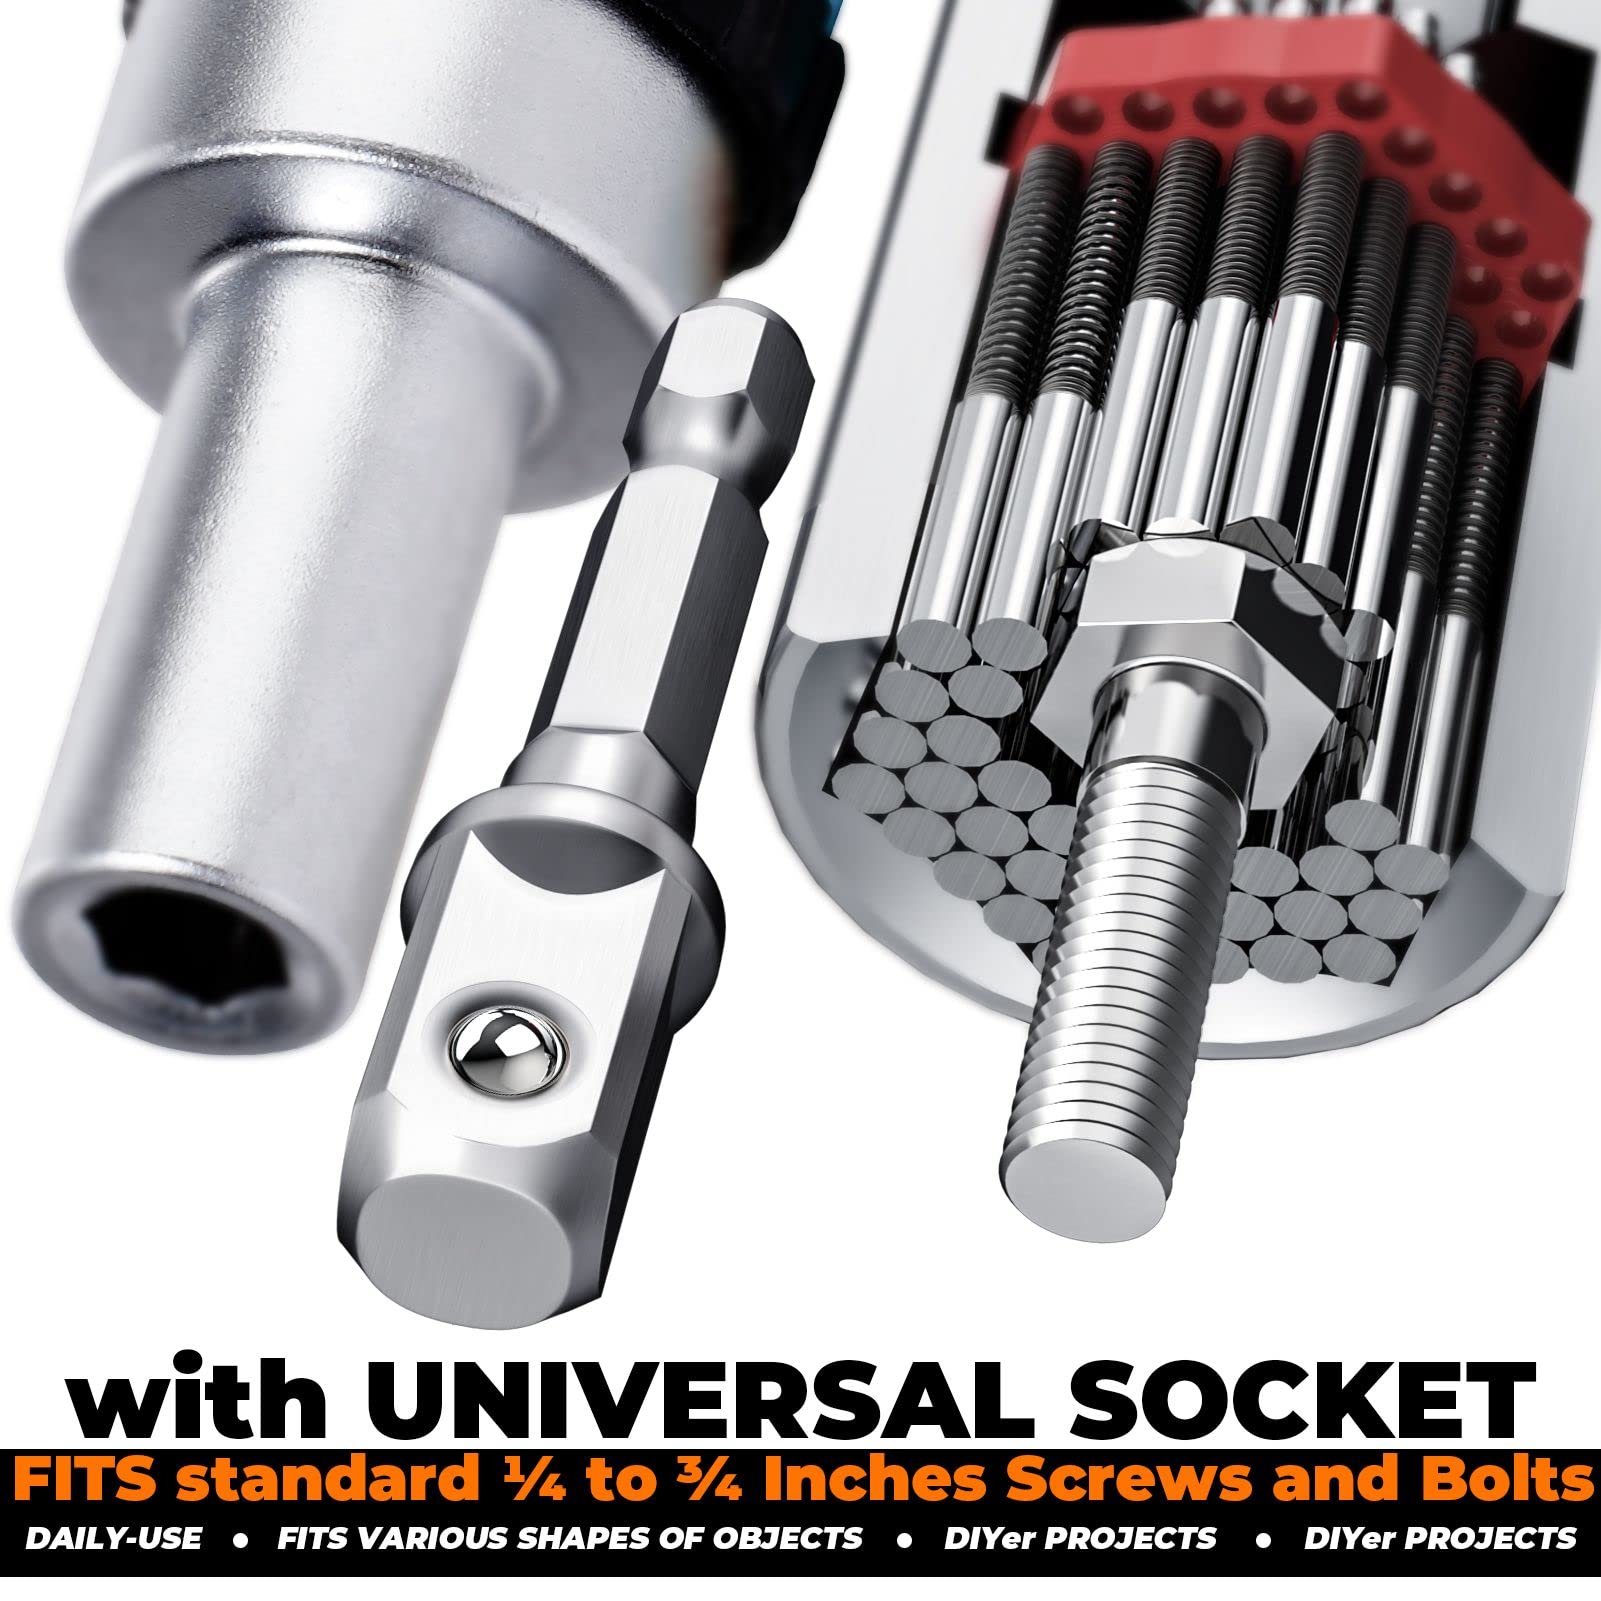 Gifts for Men Super Universal Socket Tool Set, Ratchet Screwdriver Set with T Handle, Adjustable Grip Socket Adapter Set for Mechanic, Electrician, Handyman, Orange